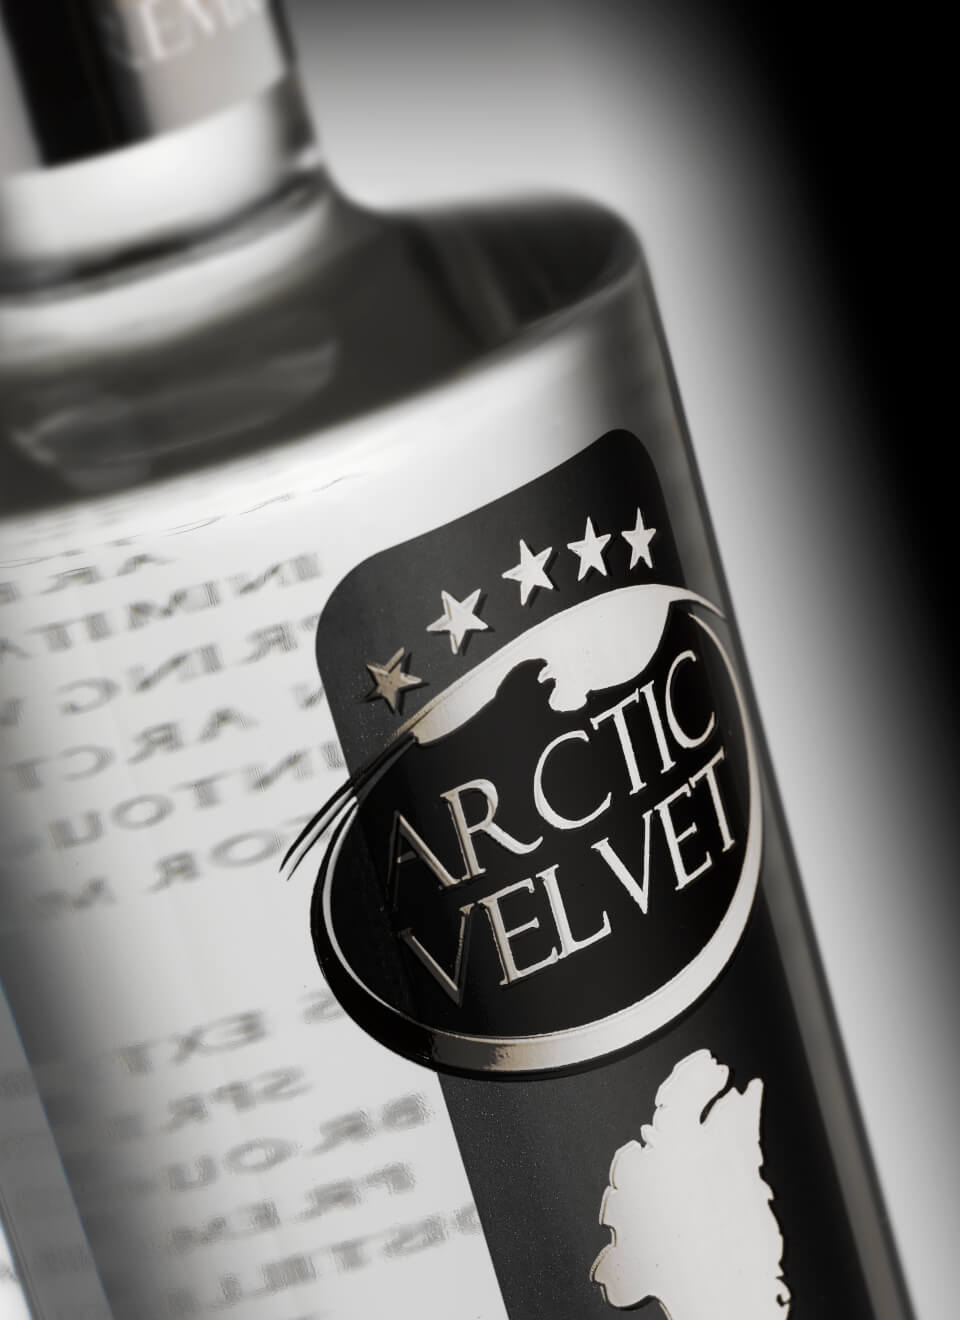 Arctic Velvet Premium Gin 0,7 L